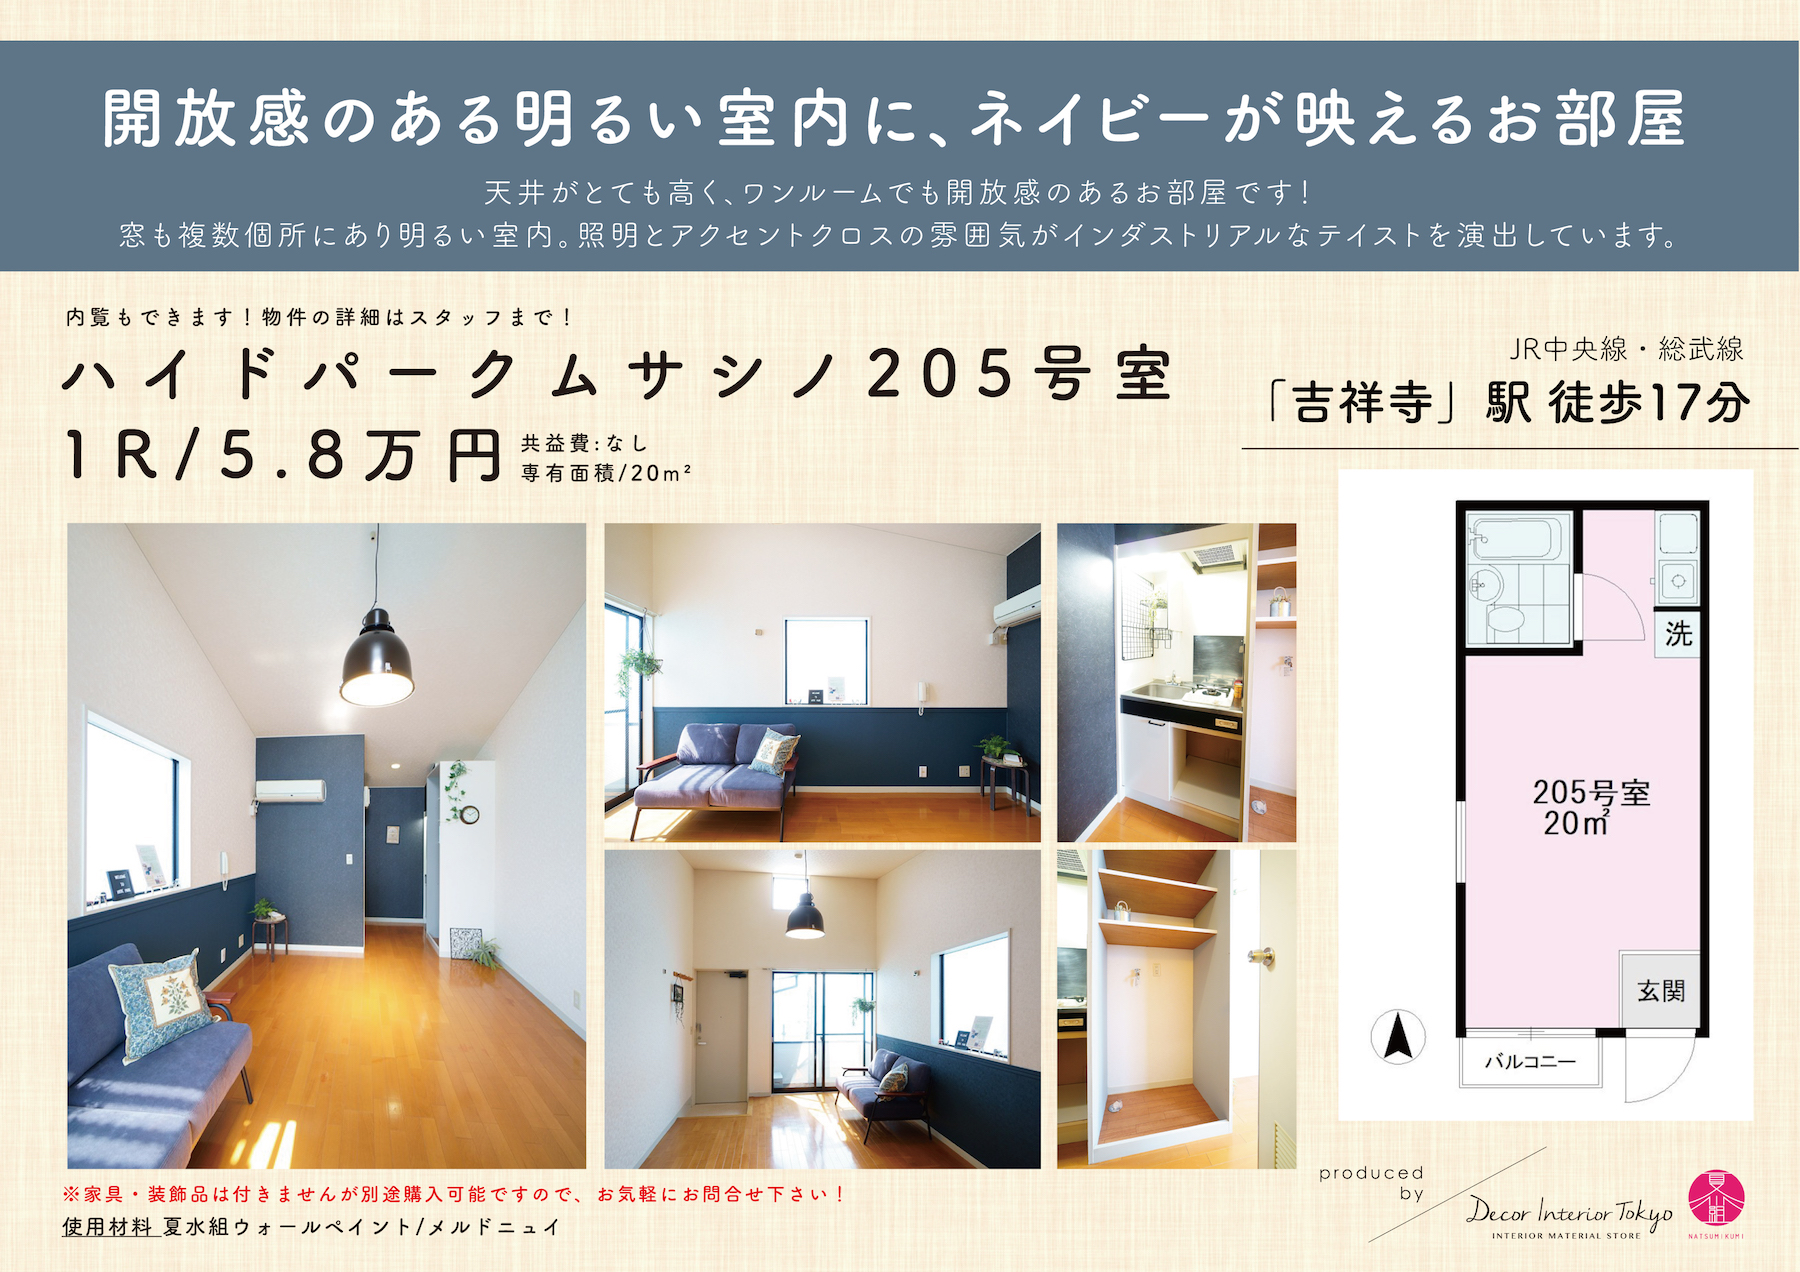 【随時更新】Decor Interior TokyoがプロデュースするDIY賃貸の物件と材料一覧